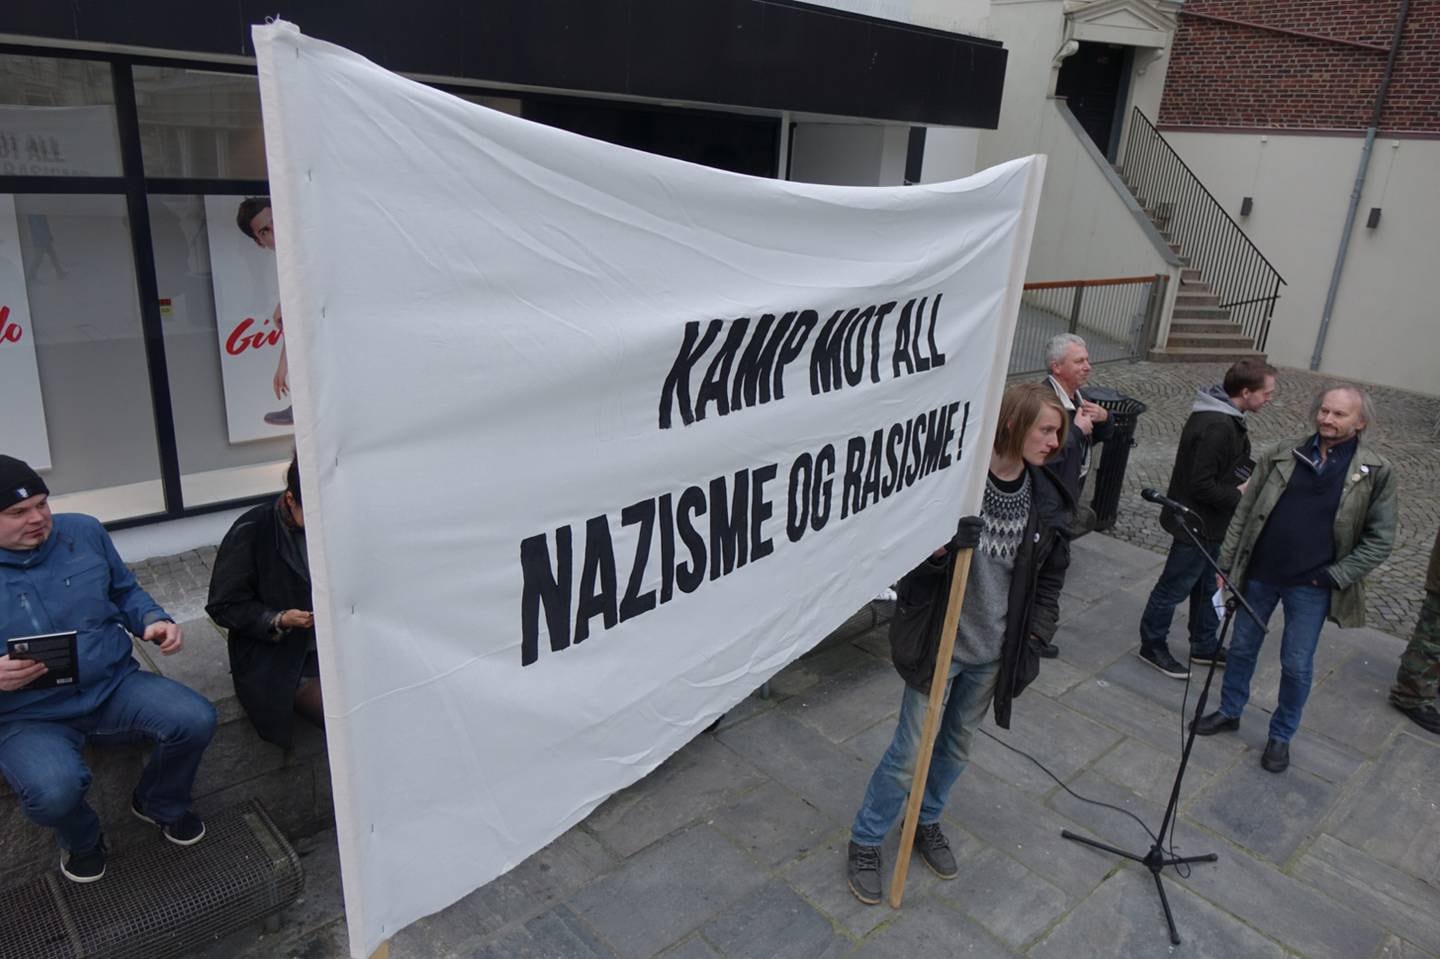 Rasismedebatten på Sølvberget har skapt mye engasjement. I forkant av debatten ble det arrangert demonstrasjon på Arneageren.